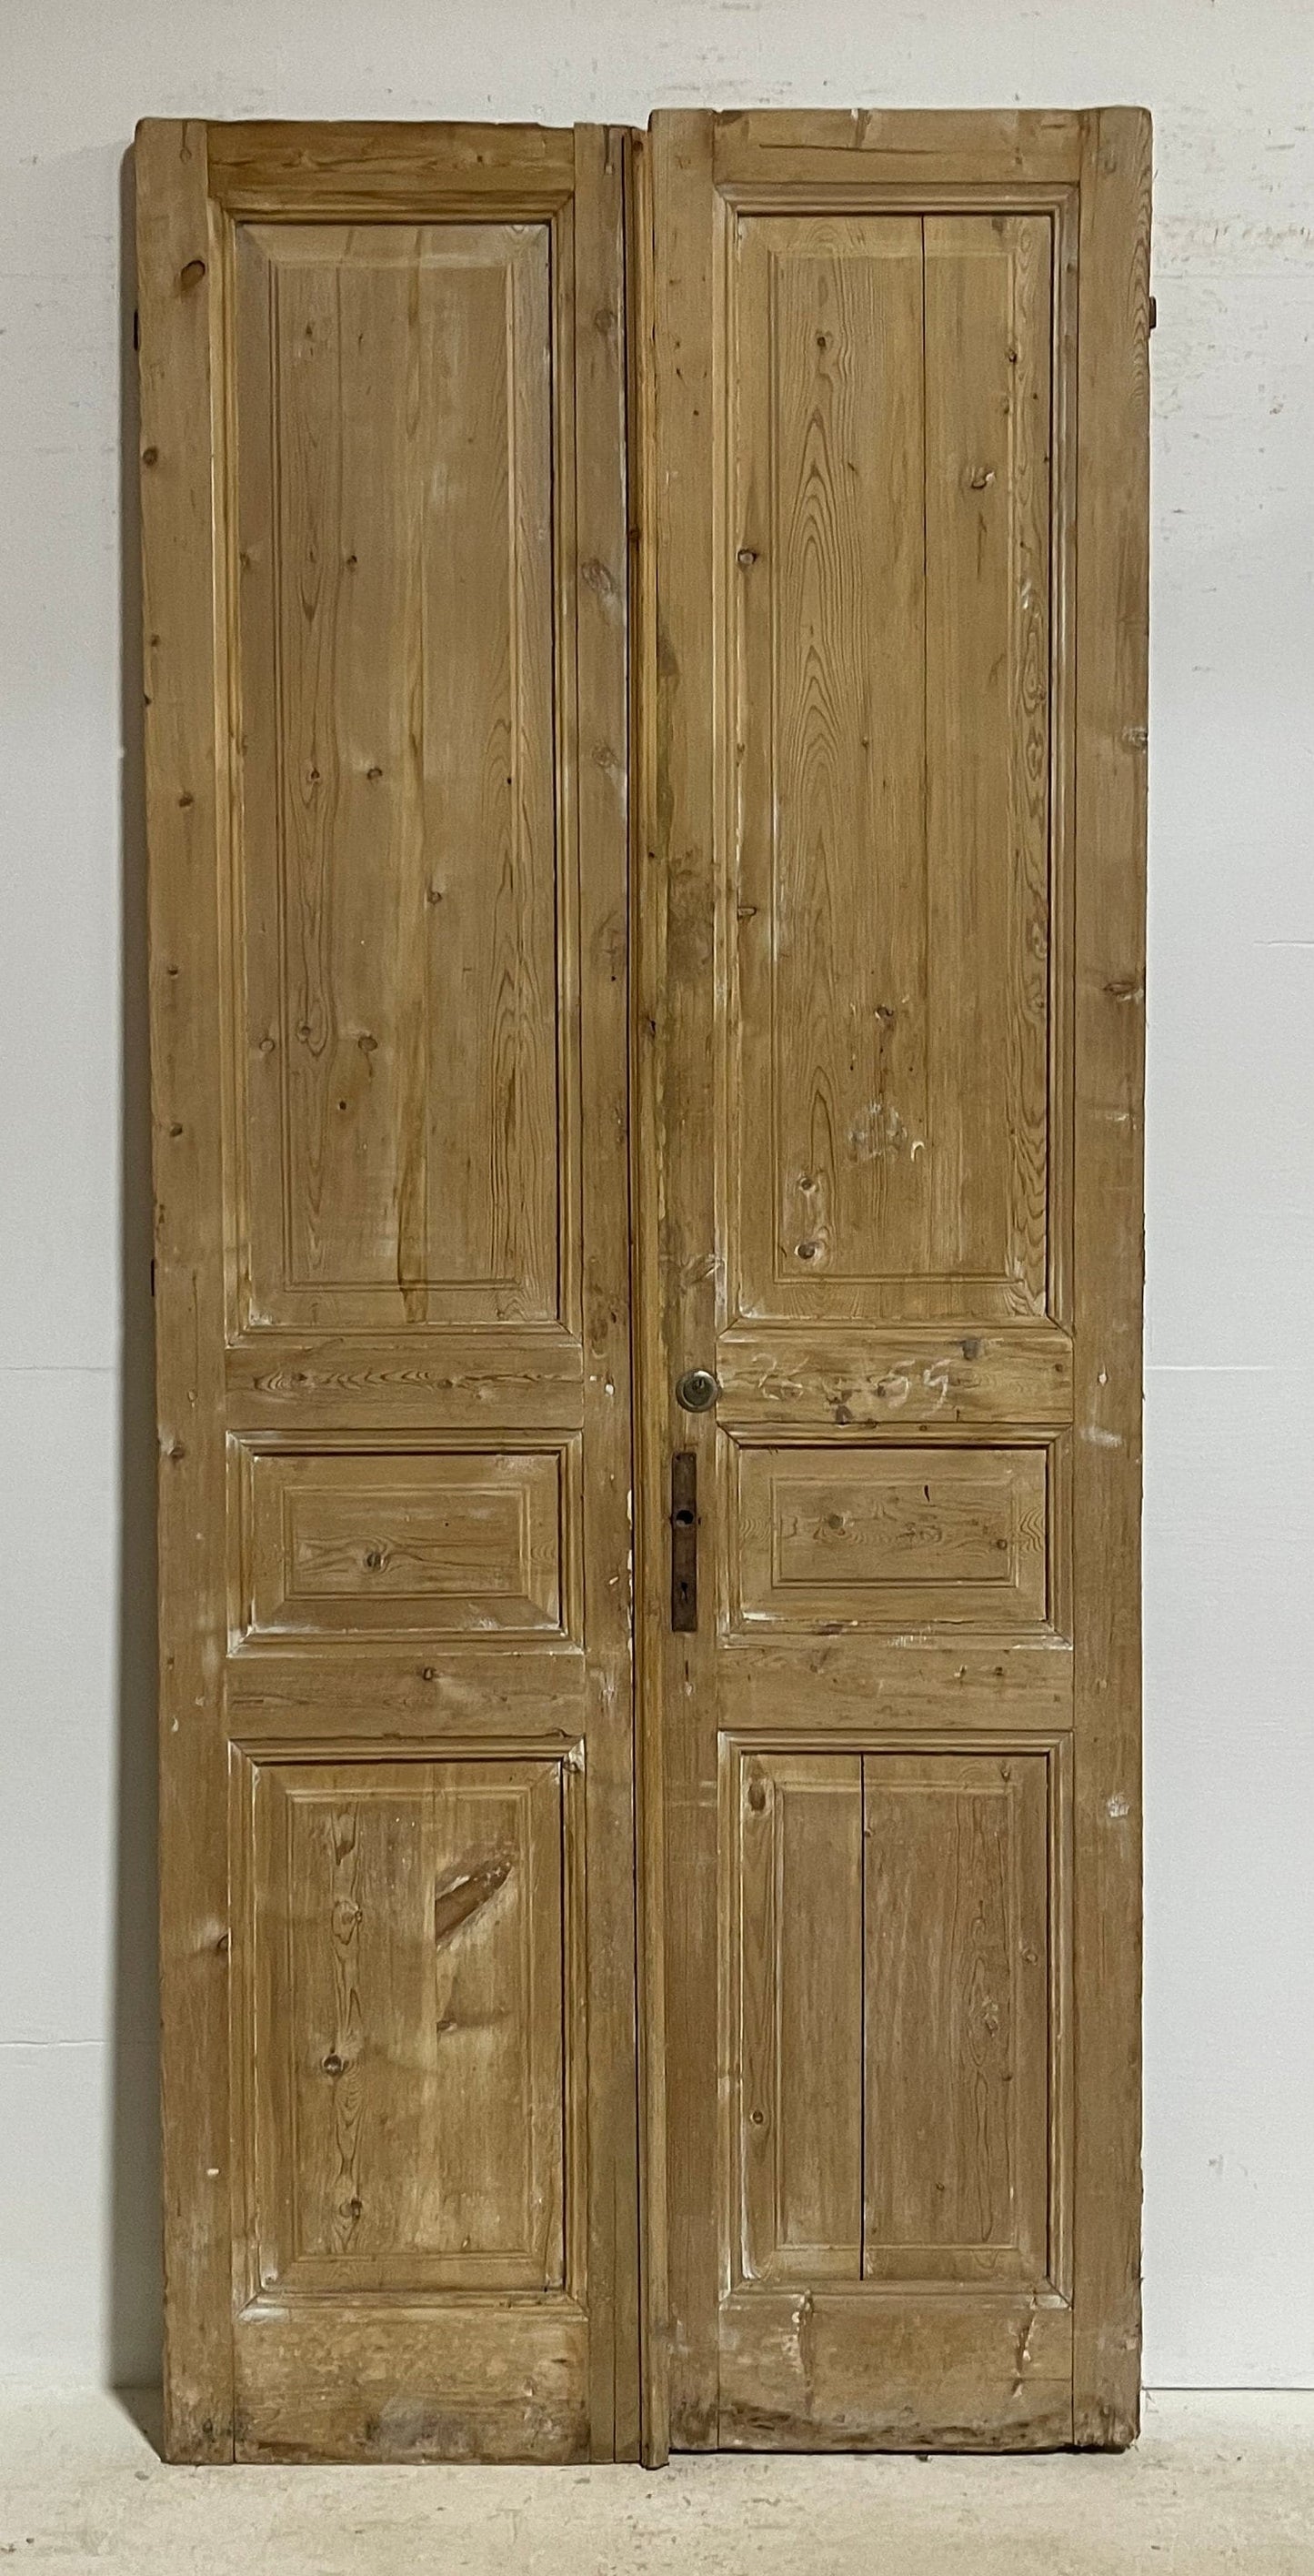 Antique French panel doors (102x43.5) G0176s warp